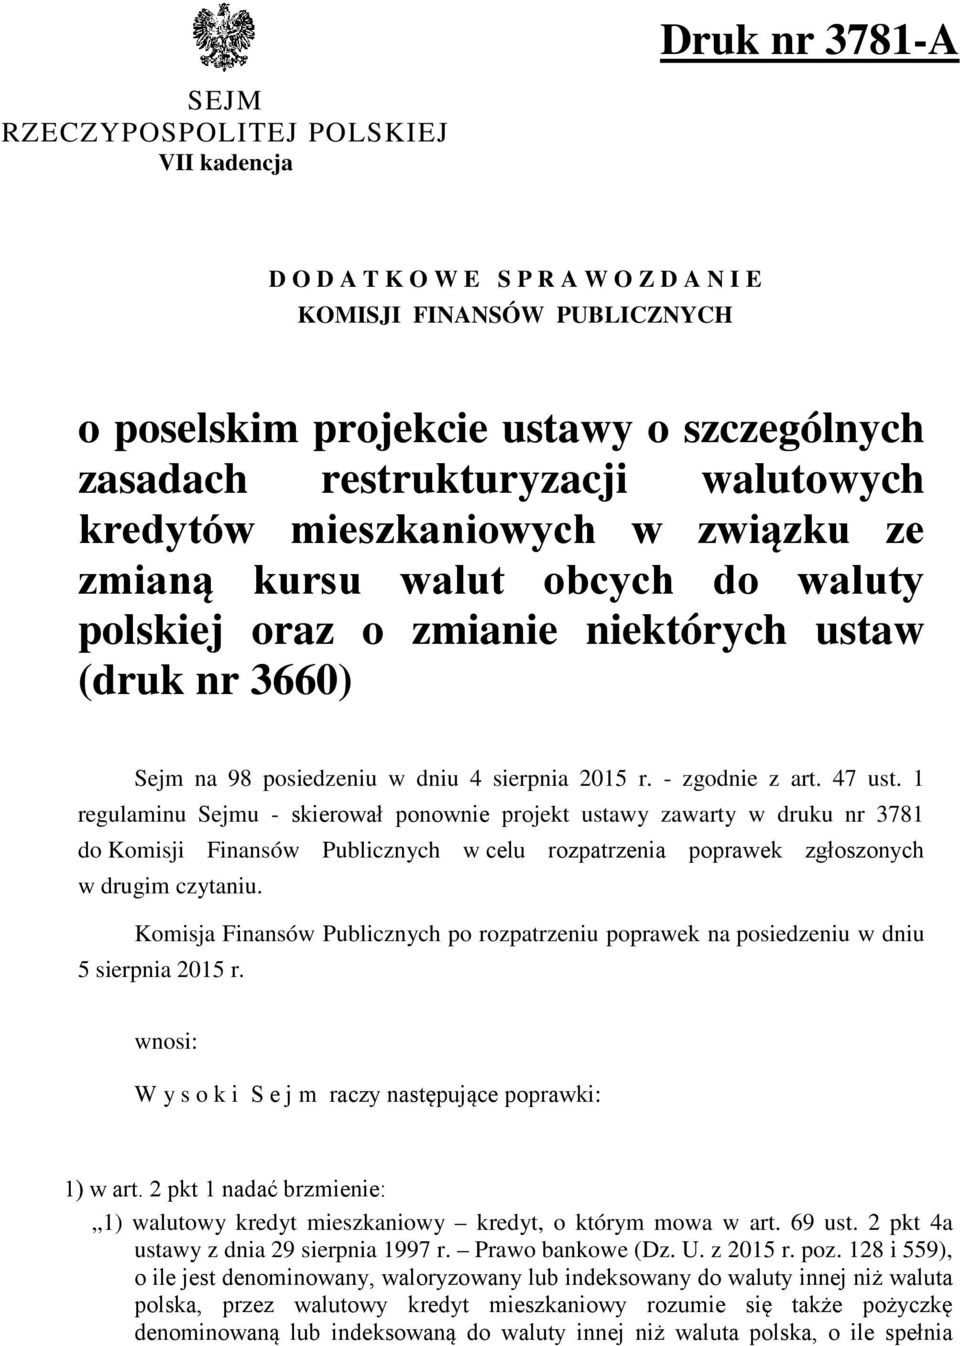 - zgodnie z art. 47 ust. 1 regulaminu Sejmu - skierował ponownie projekt ustawy zawarty w druku nr 3781 do Komisji Finansów Publicznych w celu rozpatrzenia poprawek zgłoszonych w drugim czytaniu.